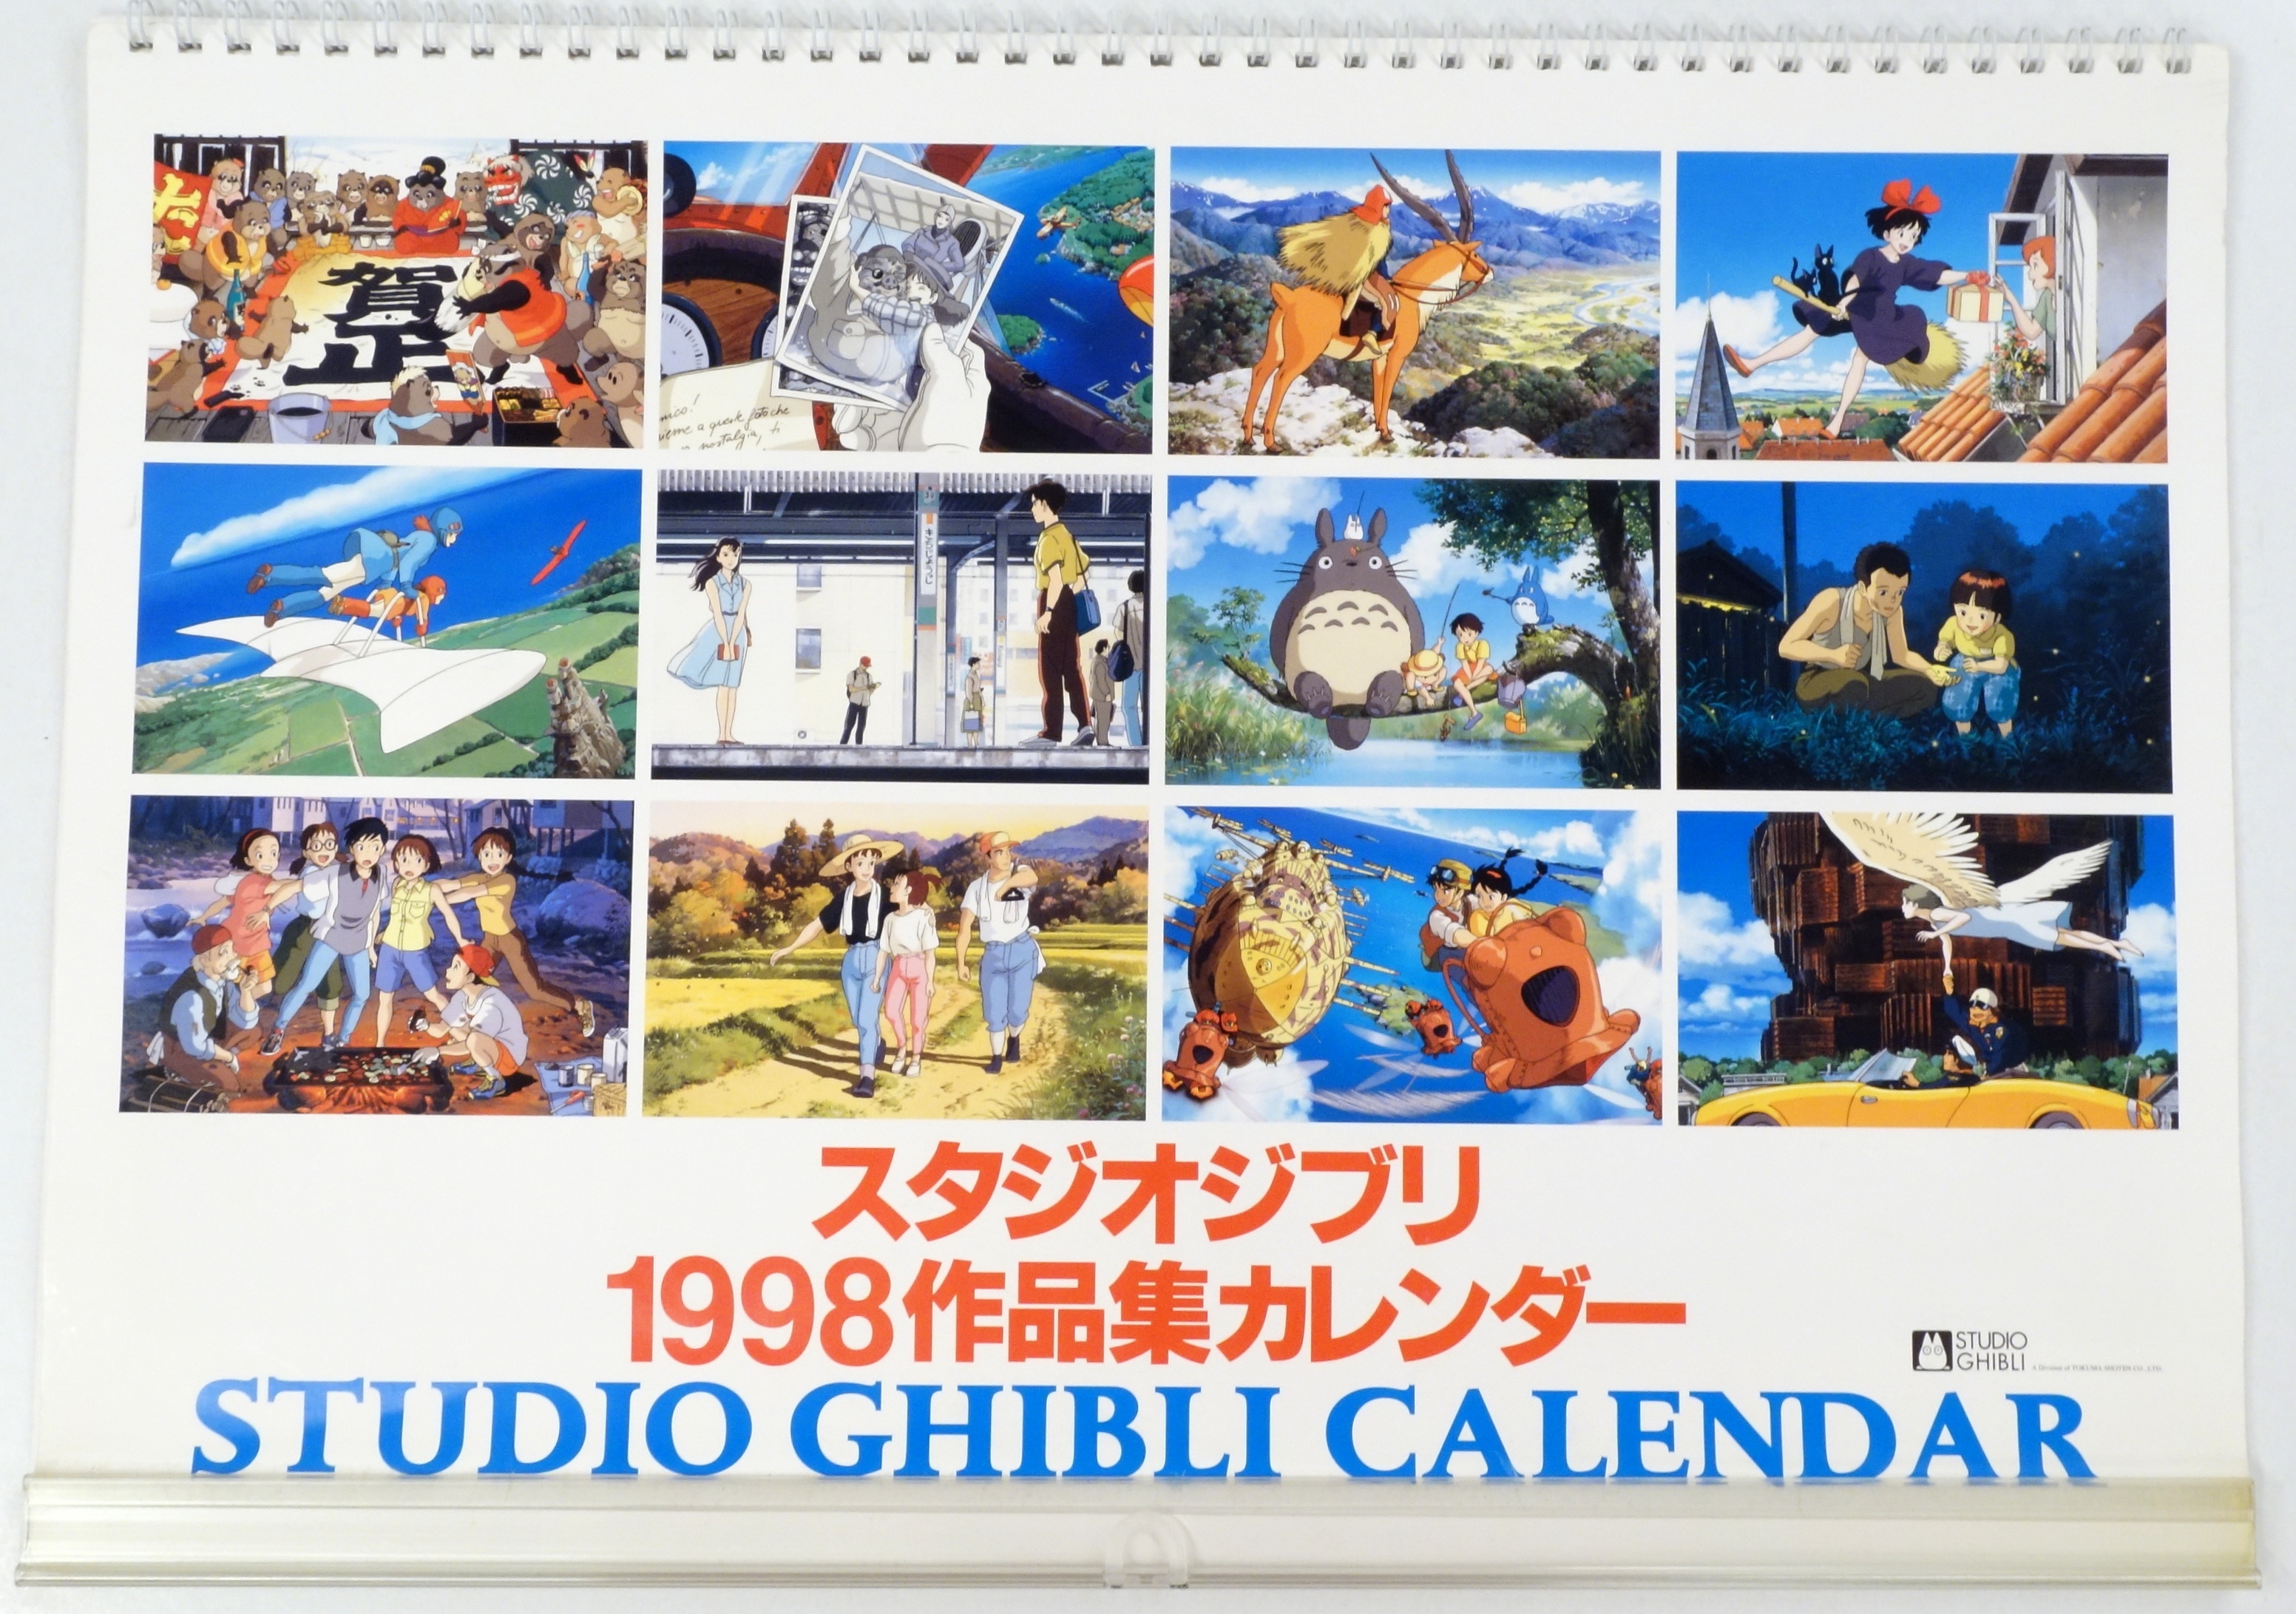 スタジオジブリ カレンダー 1998年 作品集カレンダー - アニメグッズ